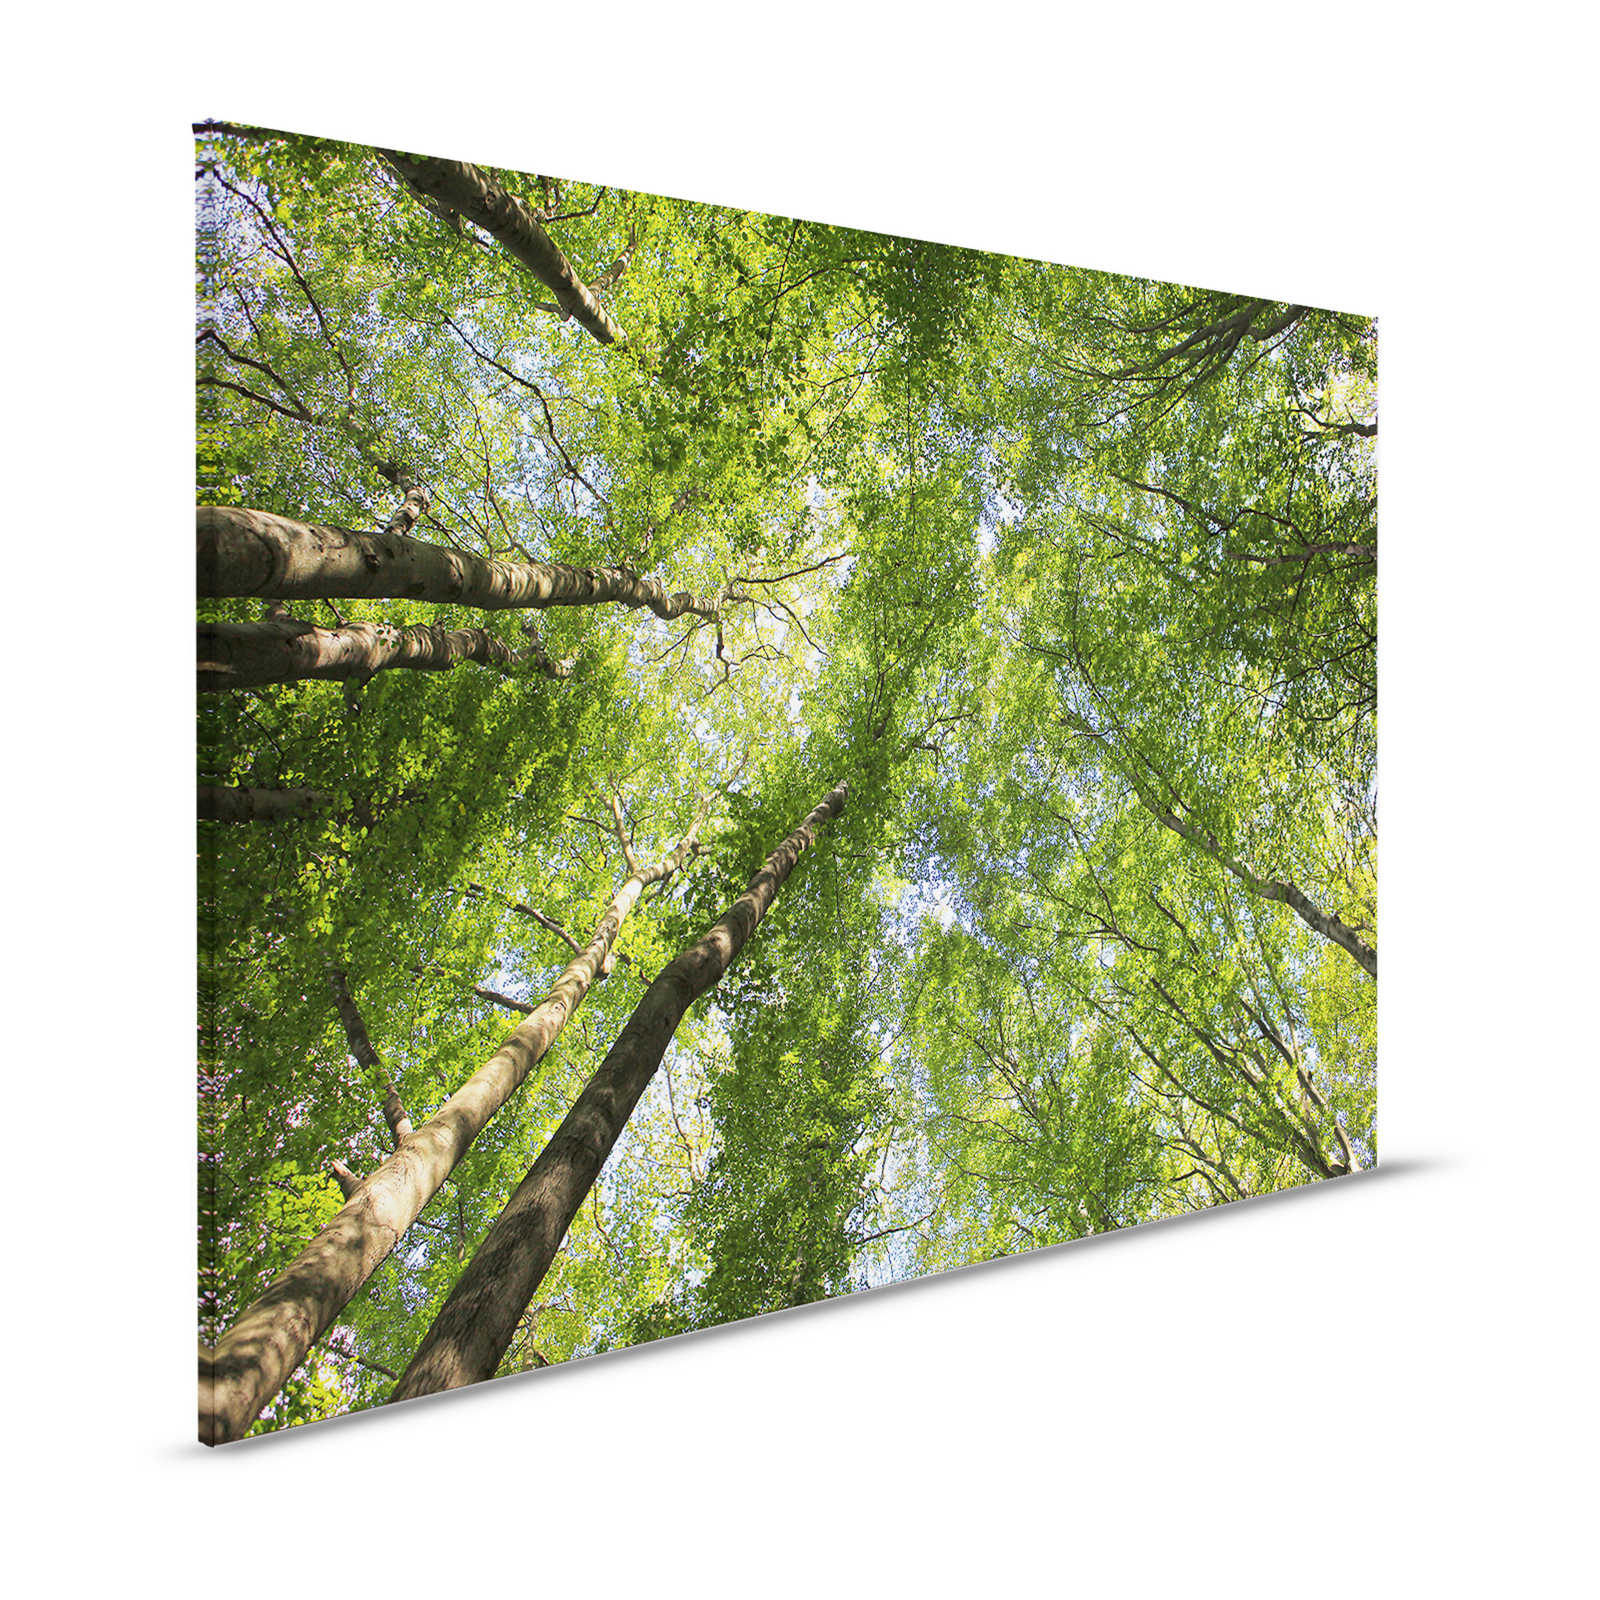 Cuadro lienzo follaje con copas de árboles de bosque caducifolio - 1,20 m x 0,80 m
